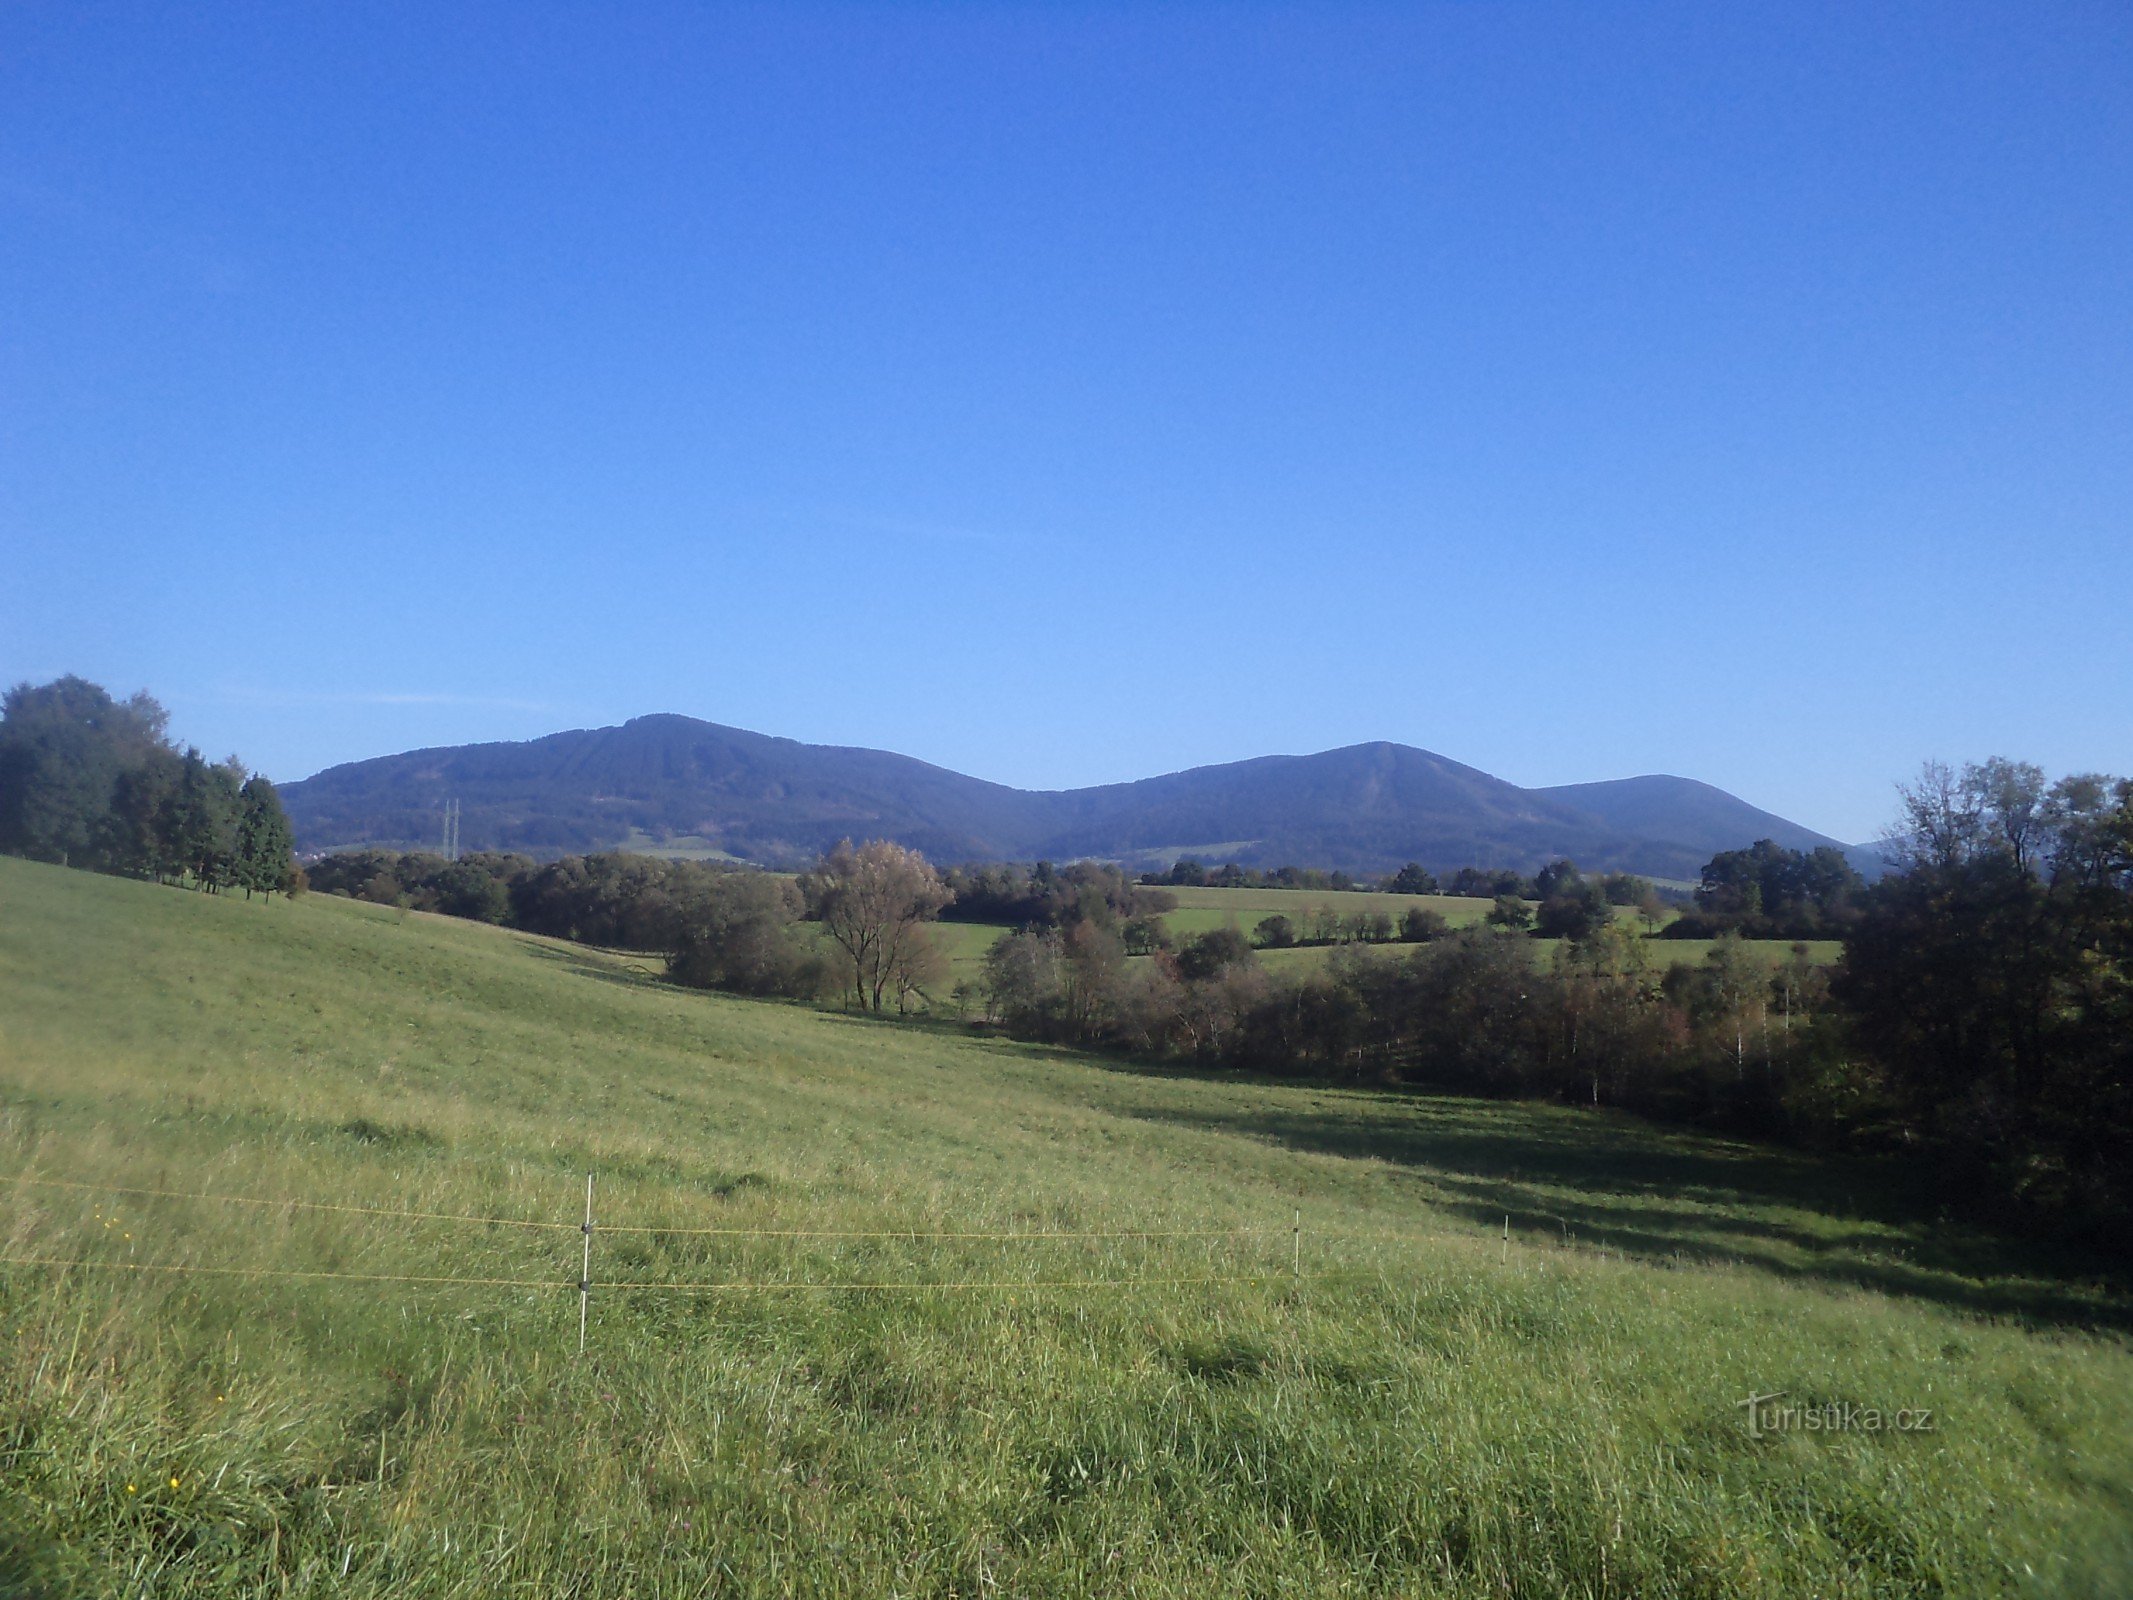 behind the view of Kozlovická hora